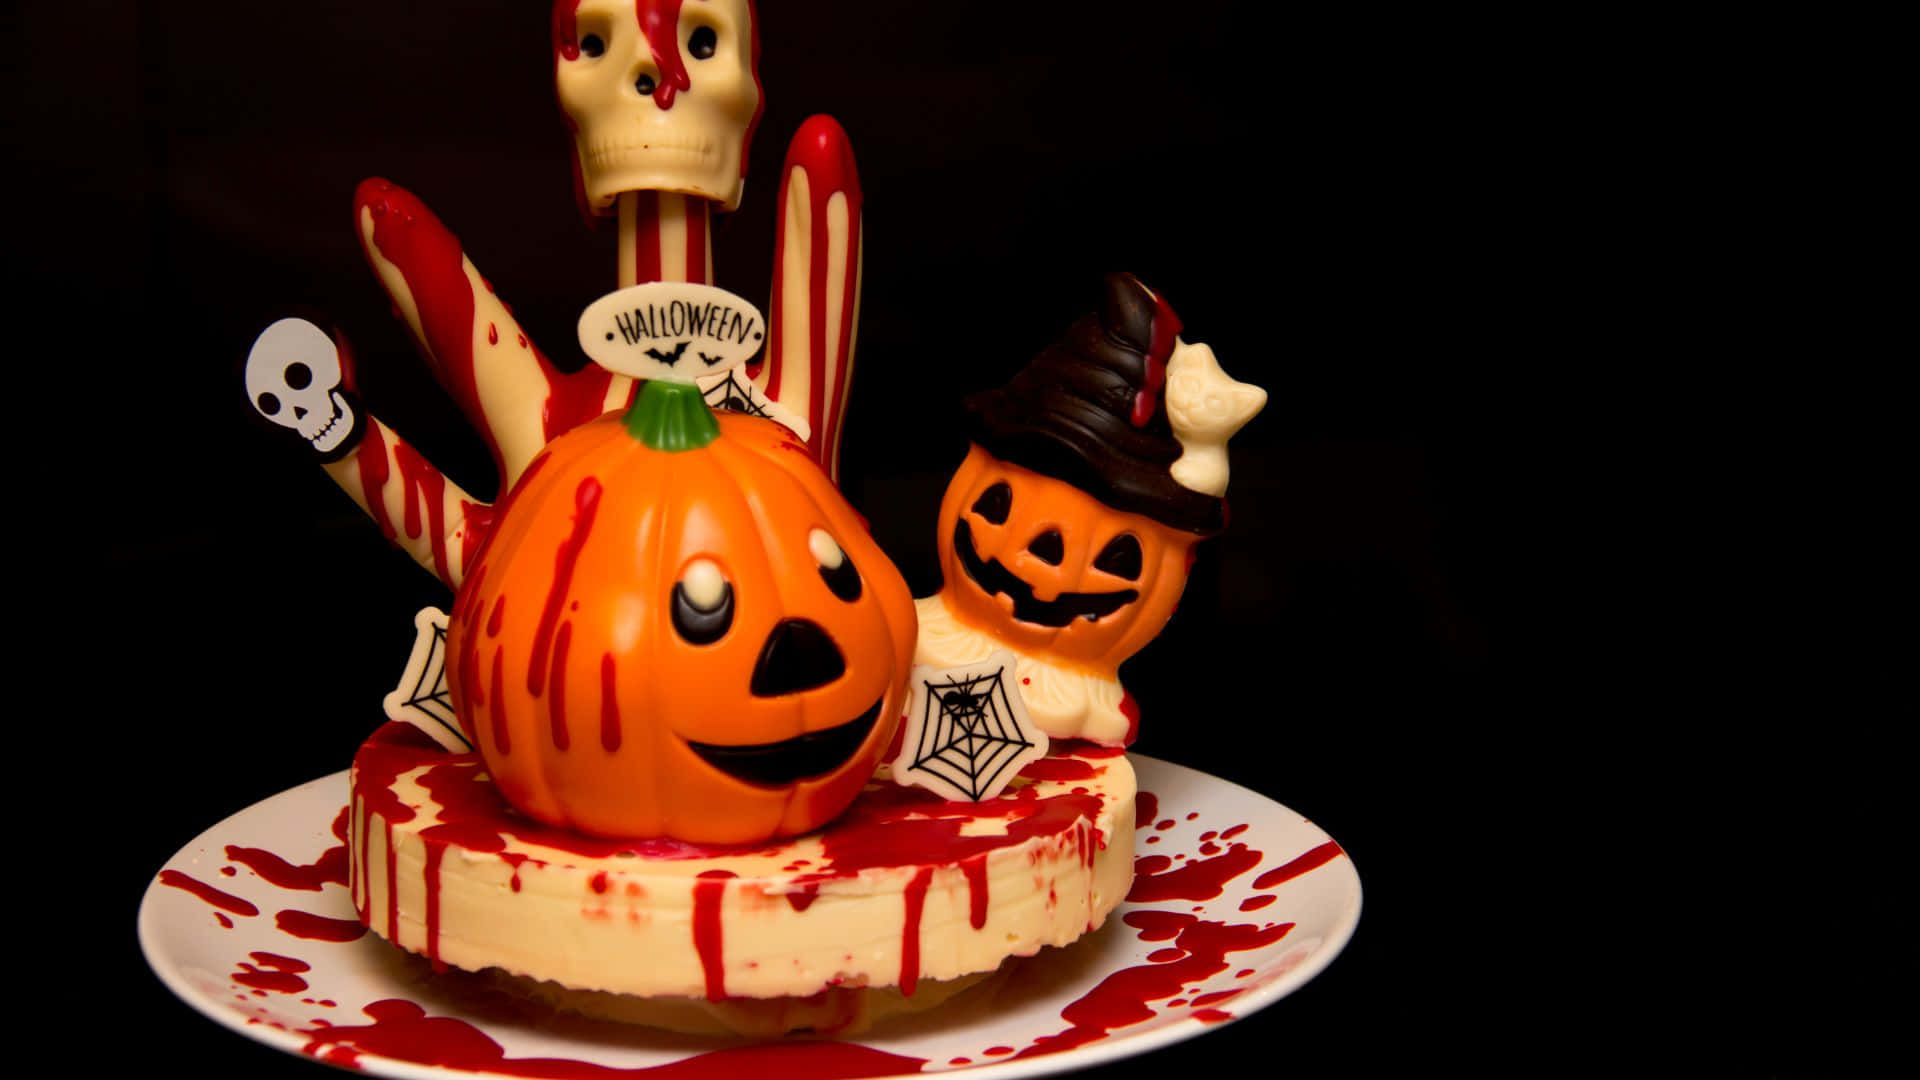 Deliciously festive! Enjoy a spooky Halloween cake this season. Wallpaper